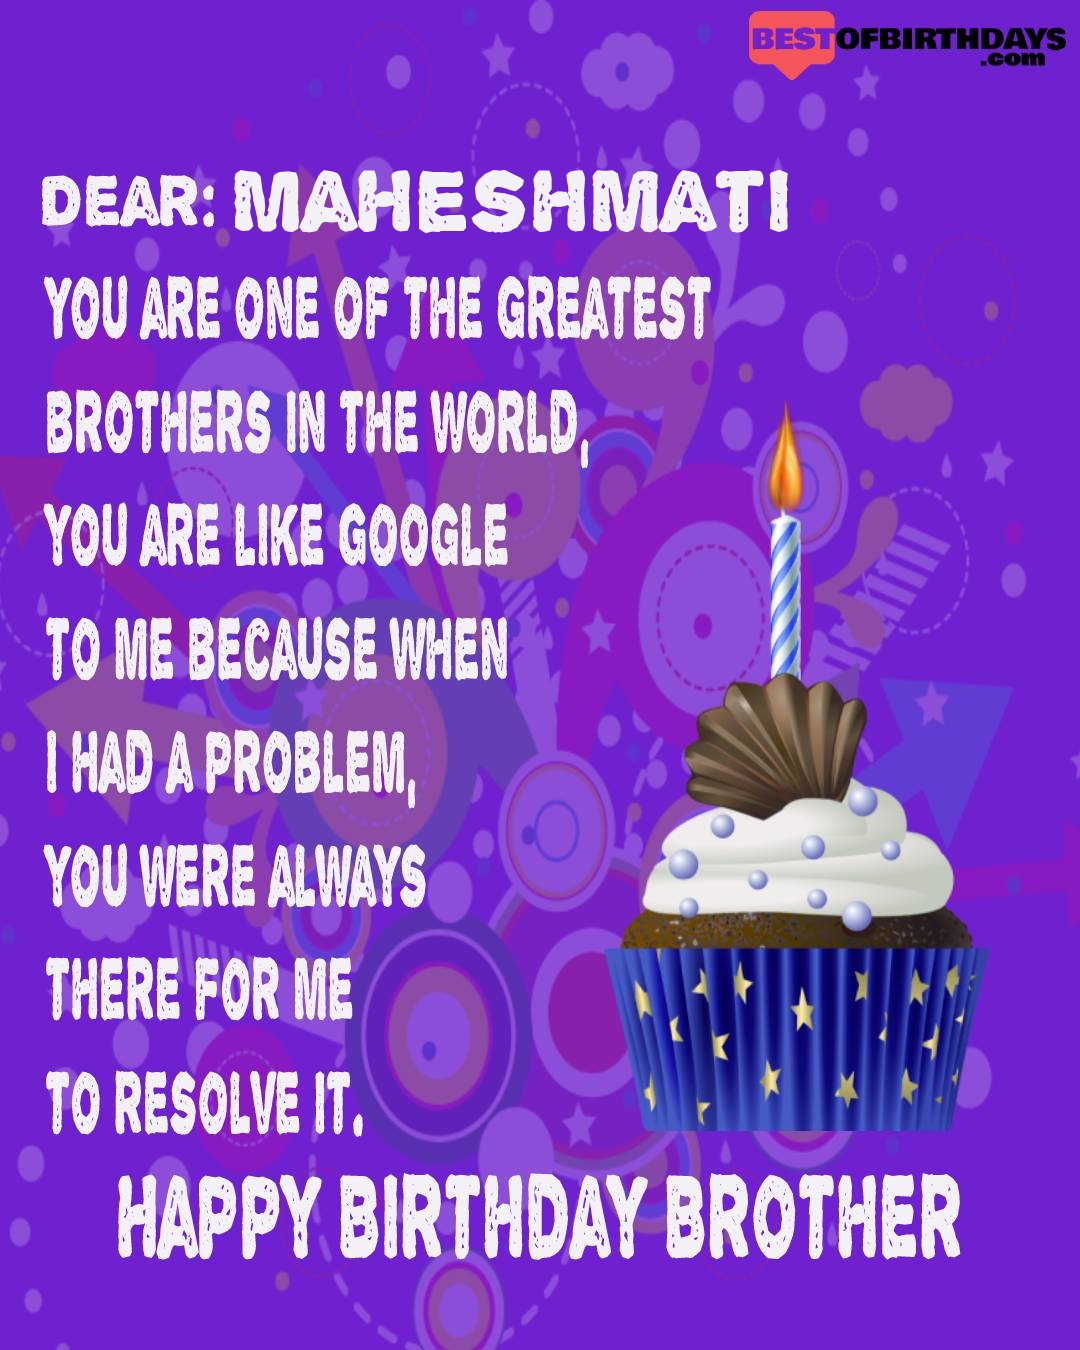 Happy birthday maheshmati bhai brother bro